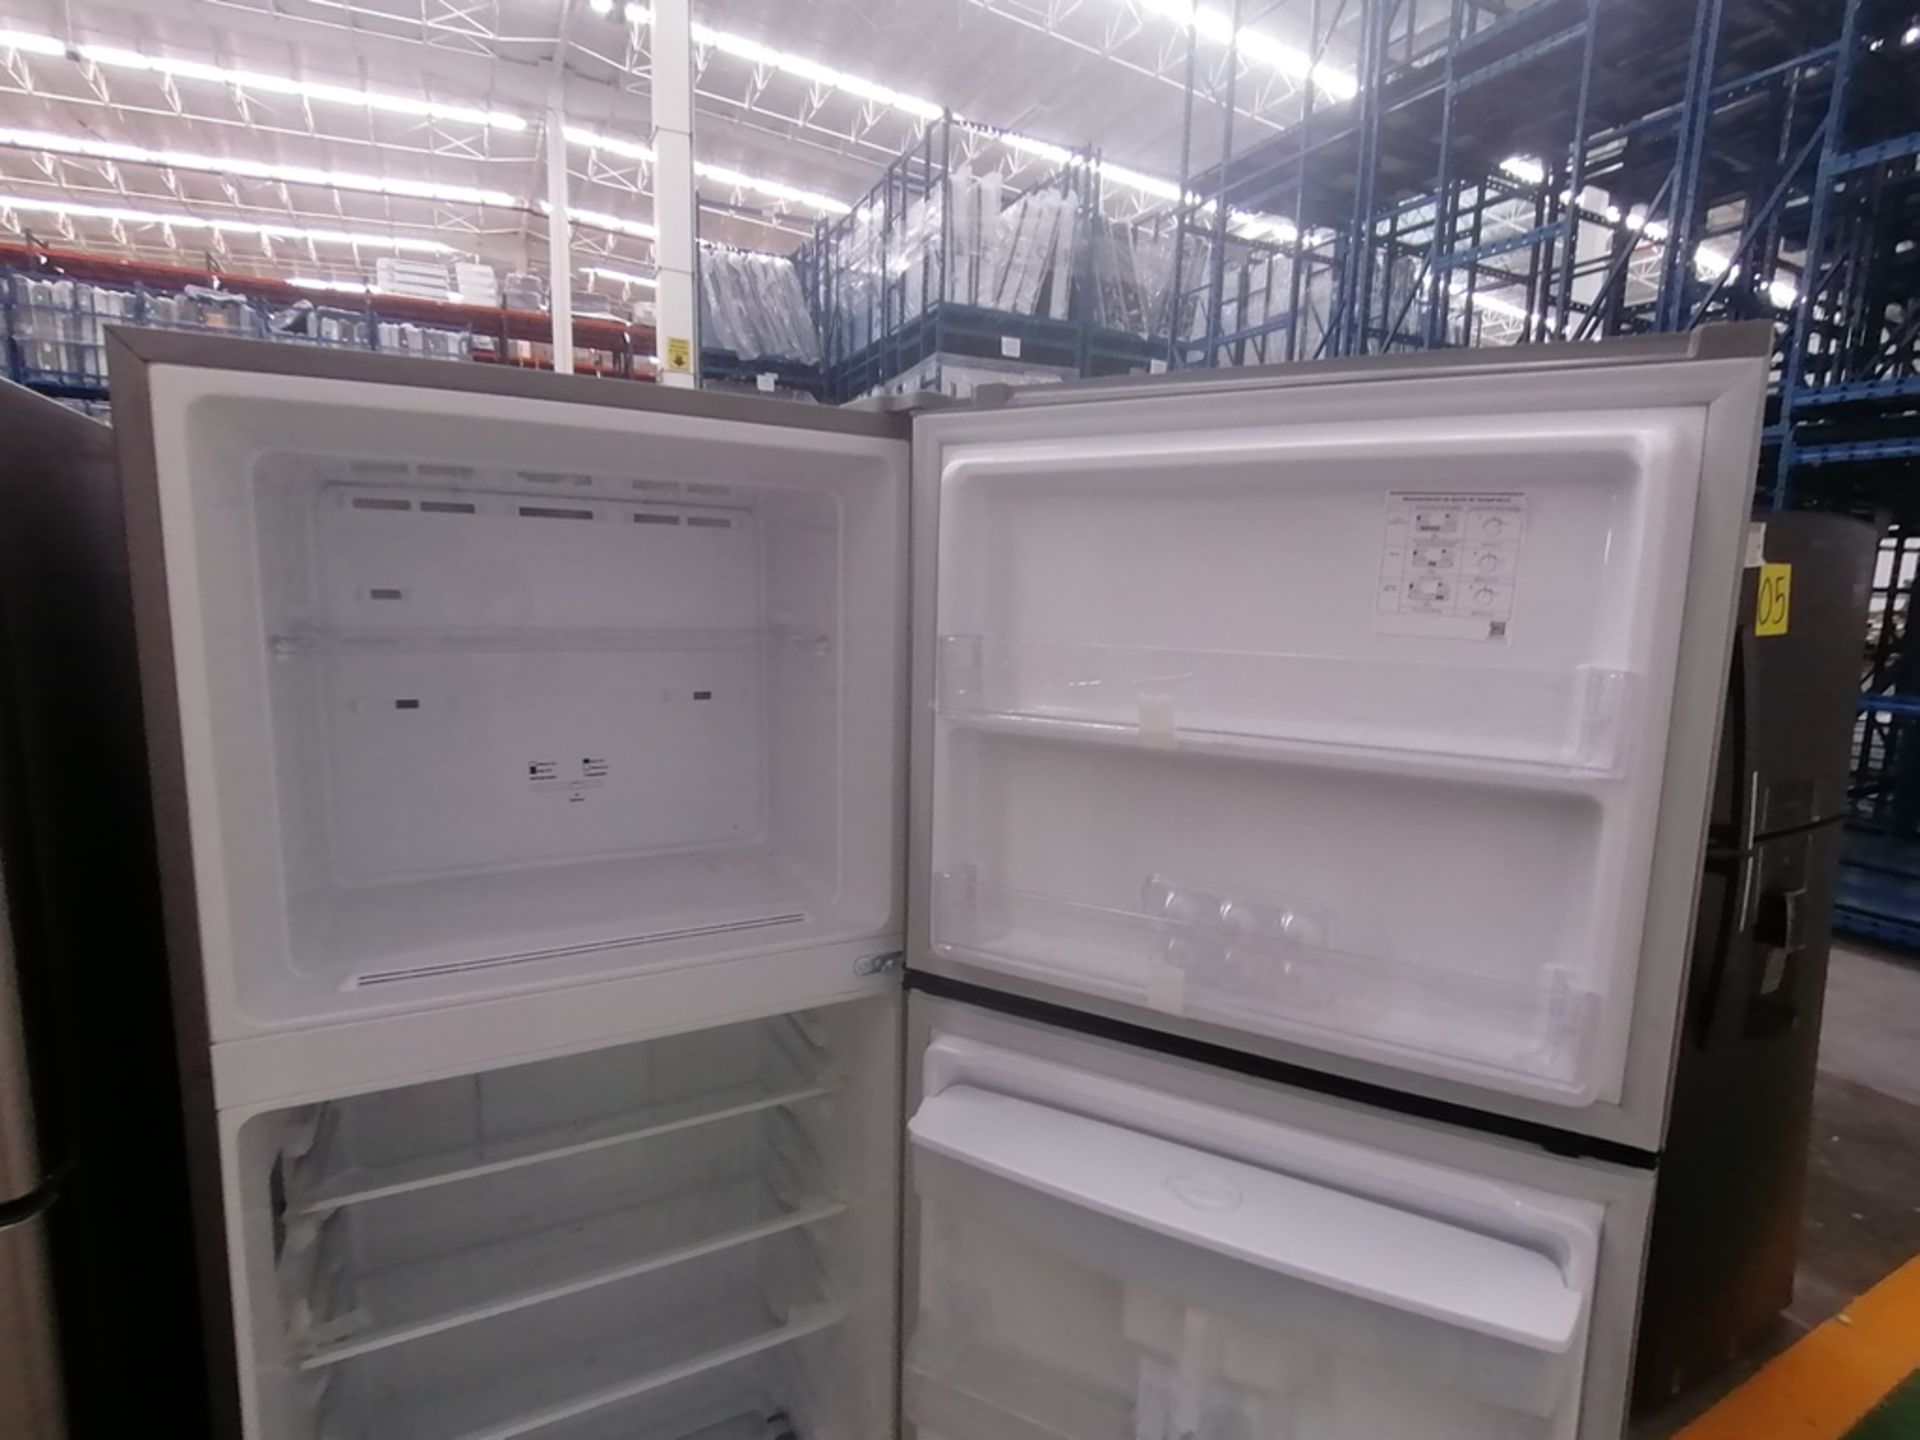 Lote de 2 refrigeradores incluye: 1 Refrigerador con dispensador de agua, Marca Mabe, Modelo RME360 - Image 12 of 15